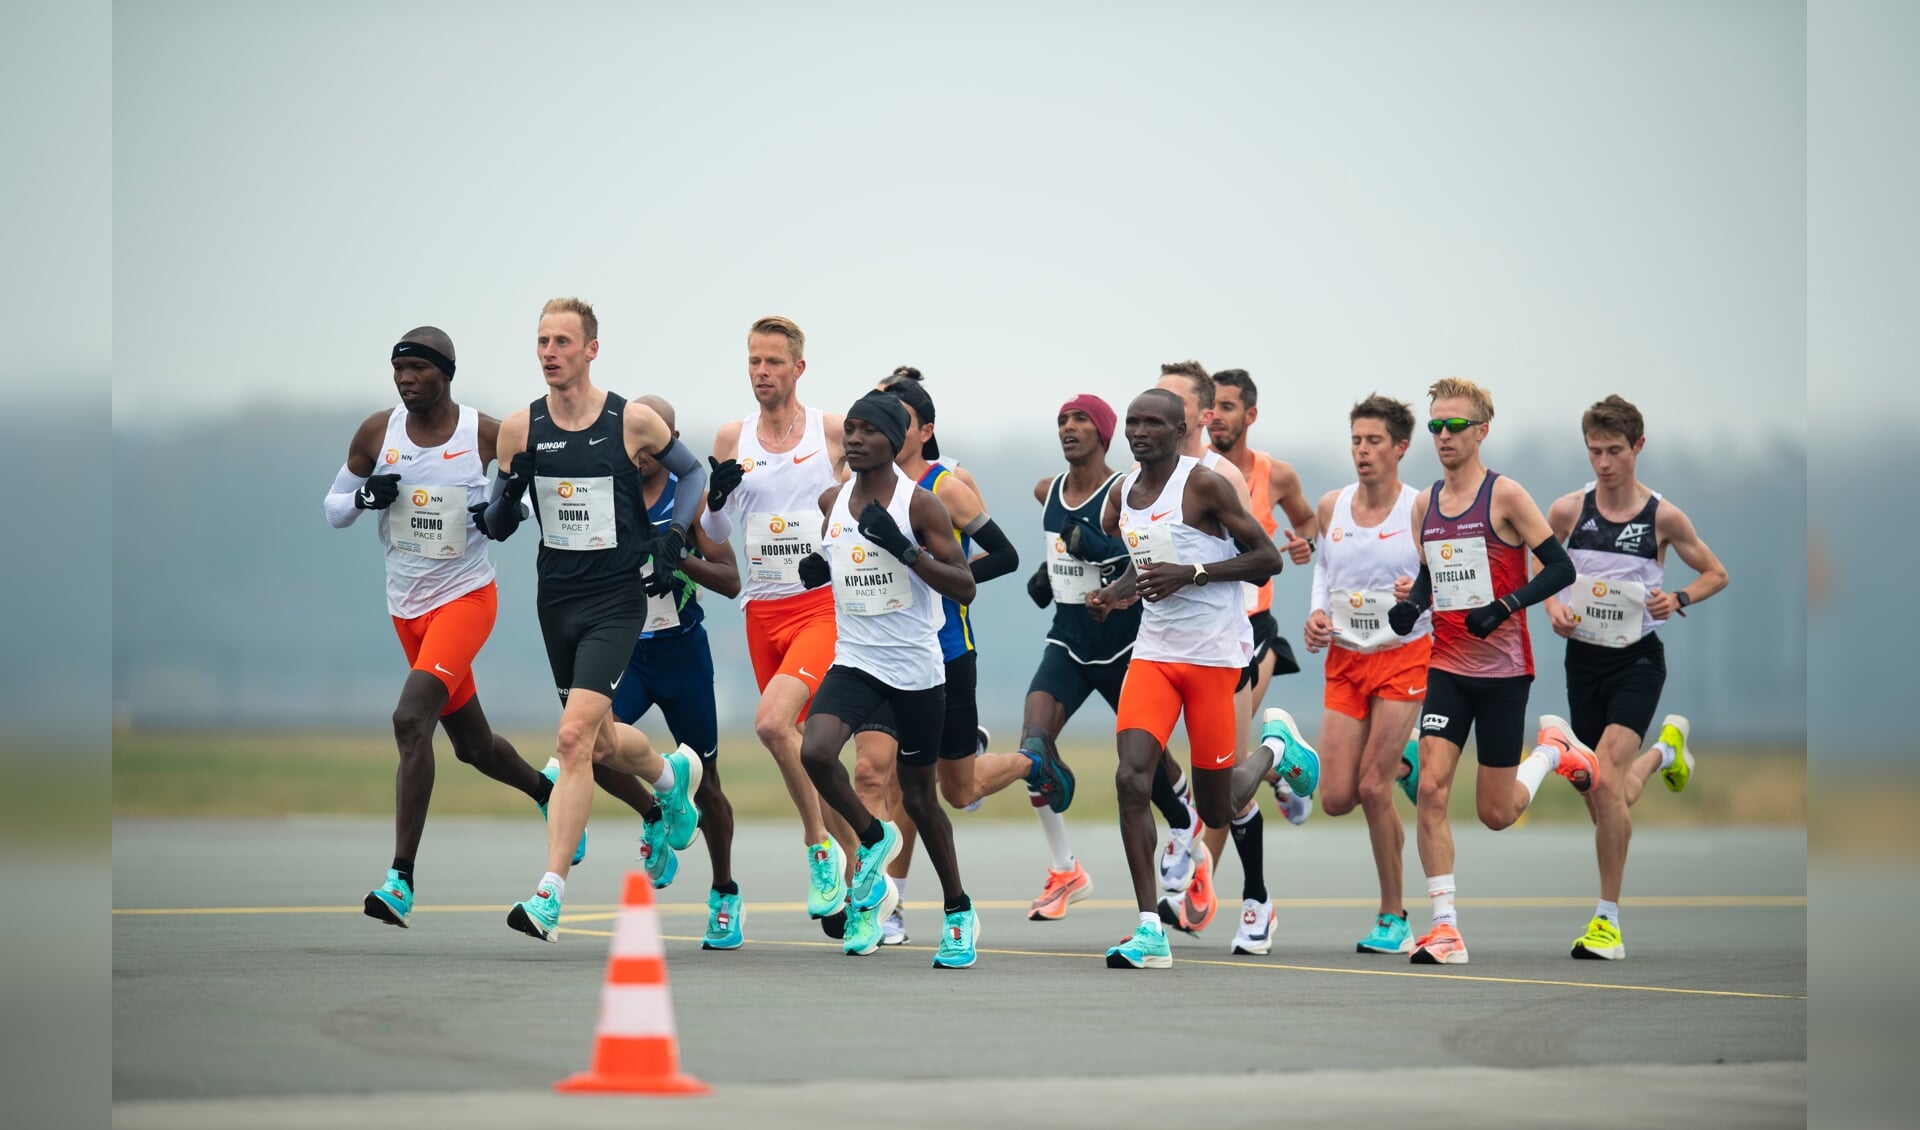 Dit jaar organiseerde Enschede Marathon een 'Hamburg-marathon' op Vliegveld Twenthe